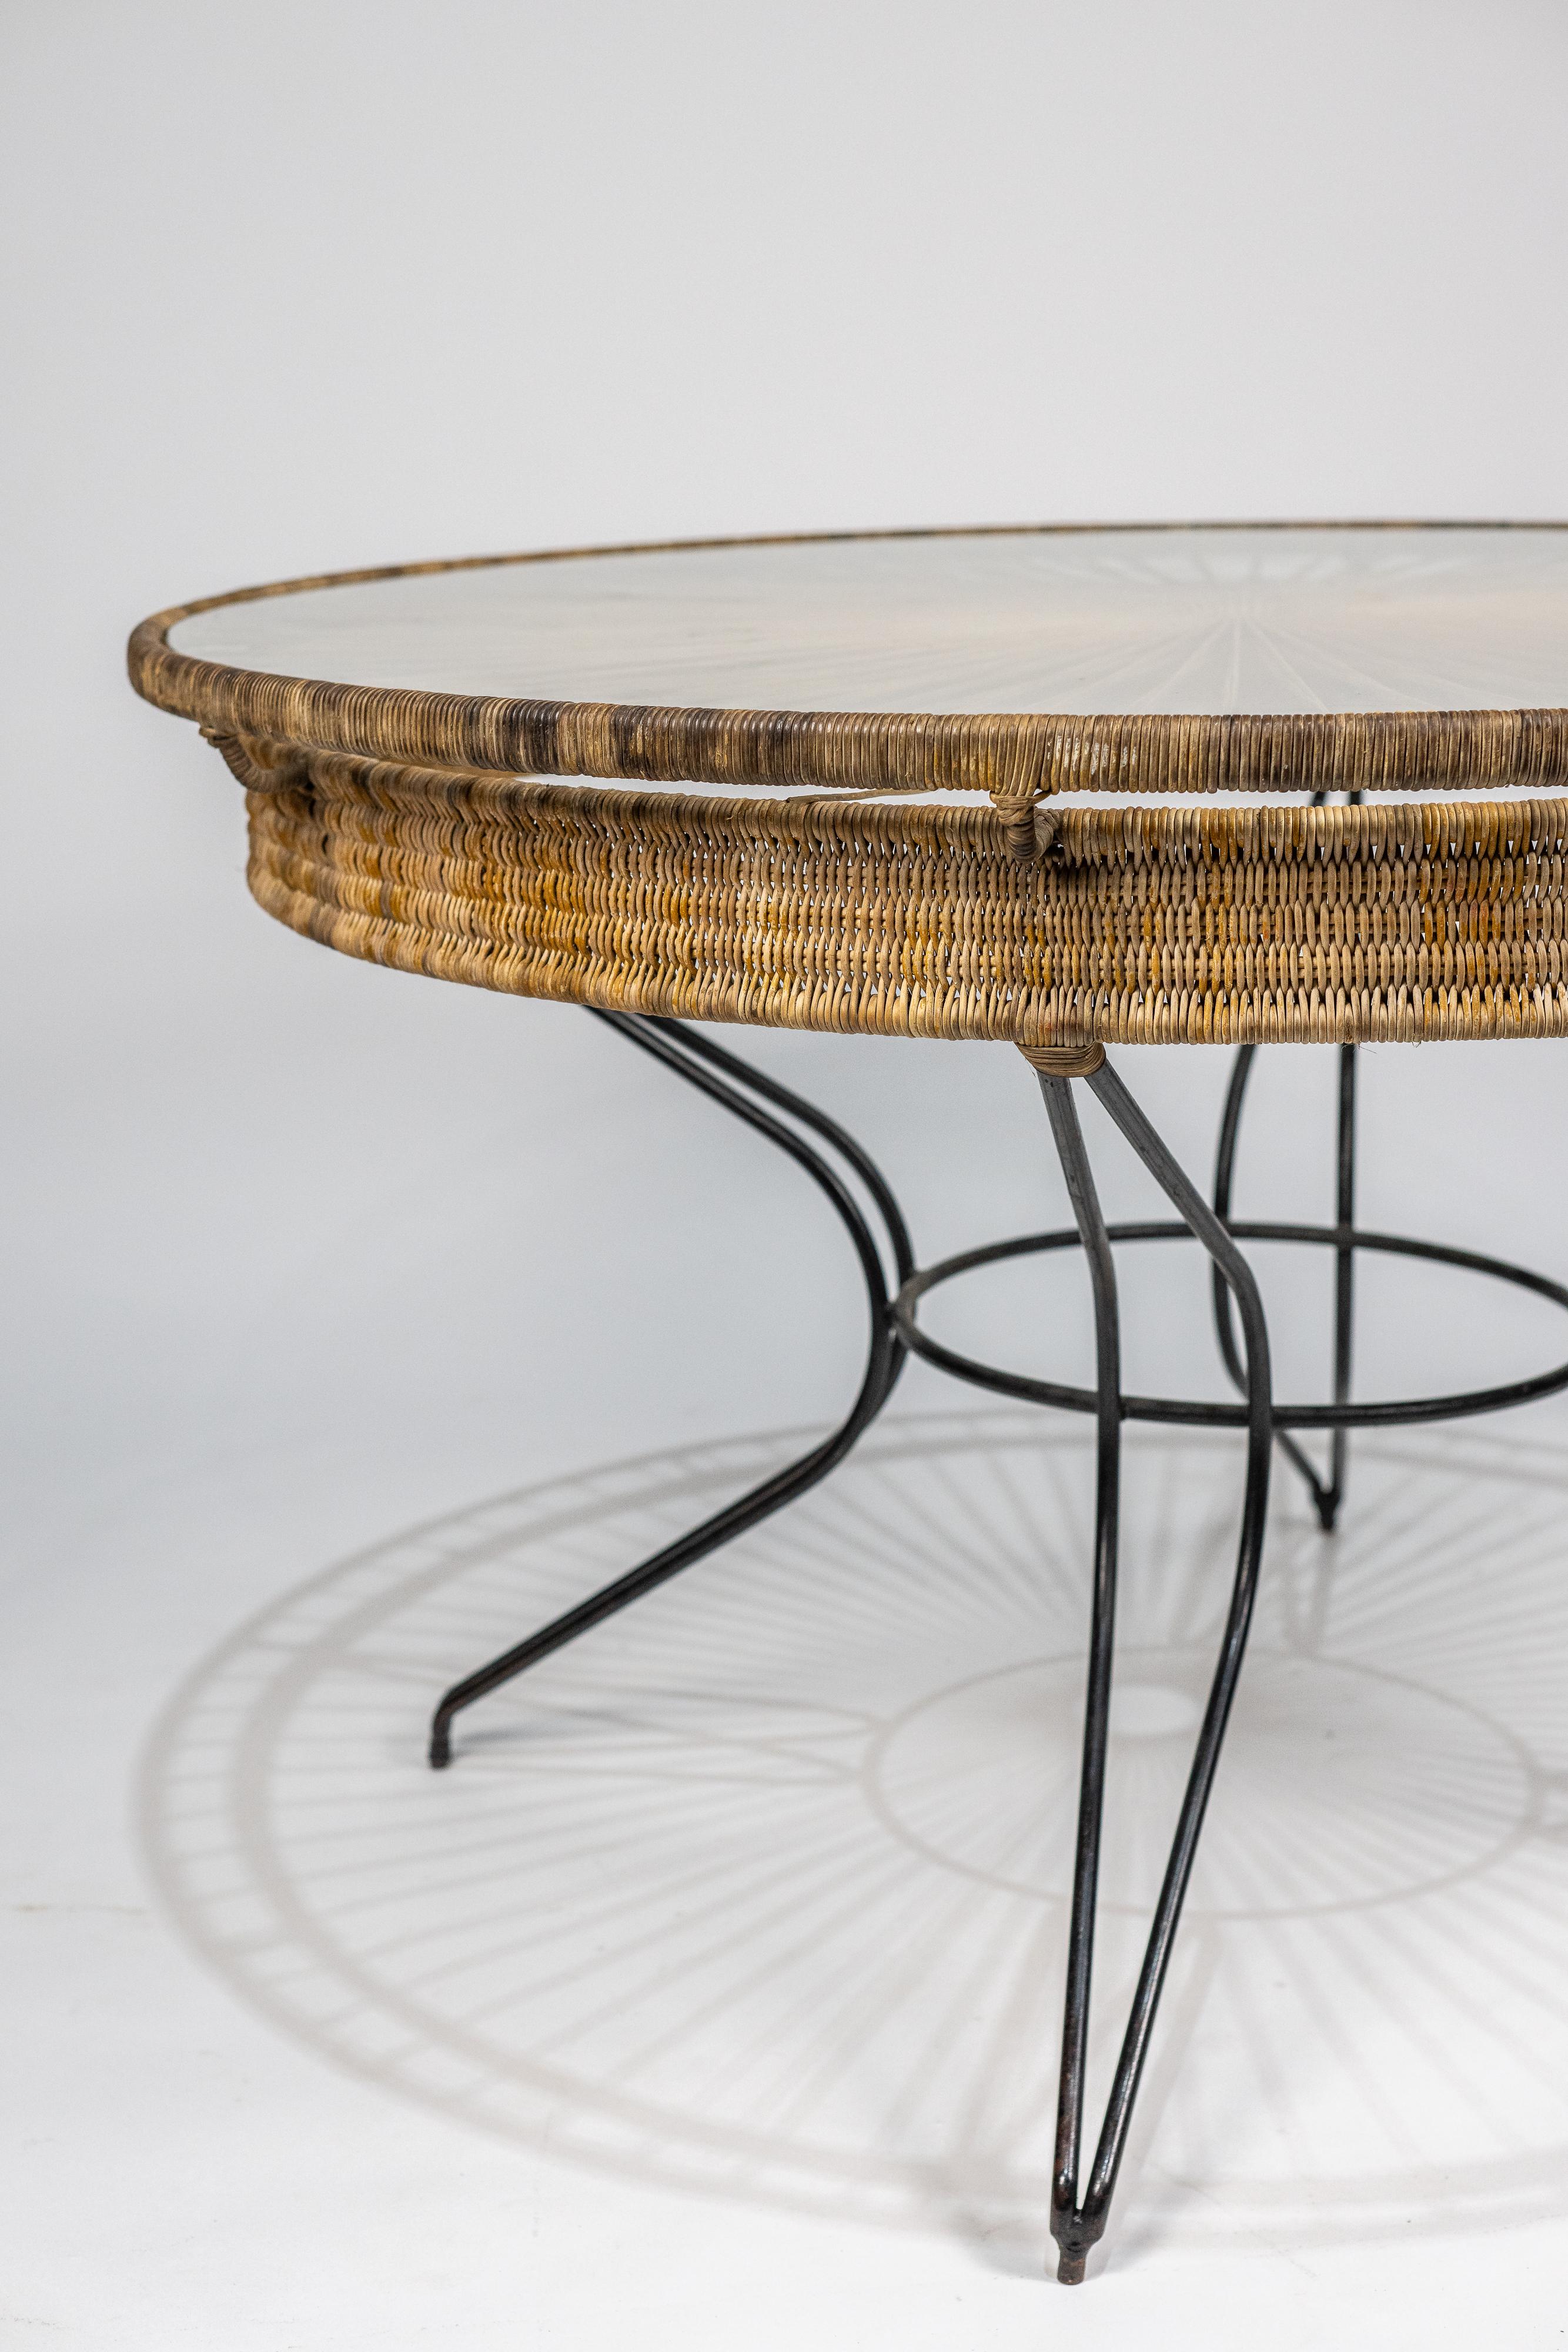 La table Carlo Hauner est une pièce de design emblématique datant des années 1950. Son esthétique est élégante et intemporelle. Cette table à manger ronde est conçue avec un mélange de matériaux de haute qualité, notamment du fer peint en noir, de